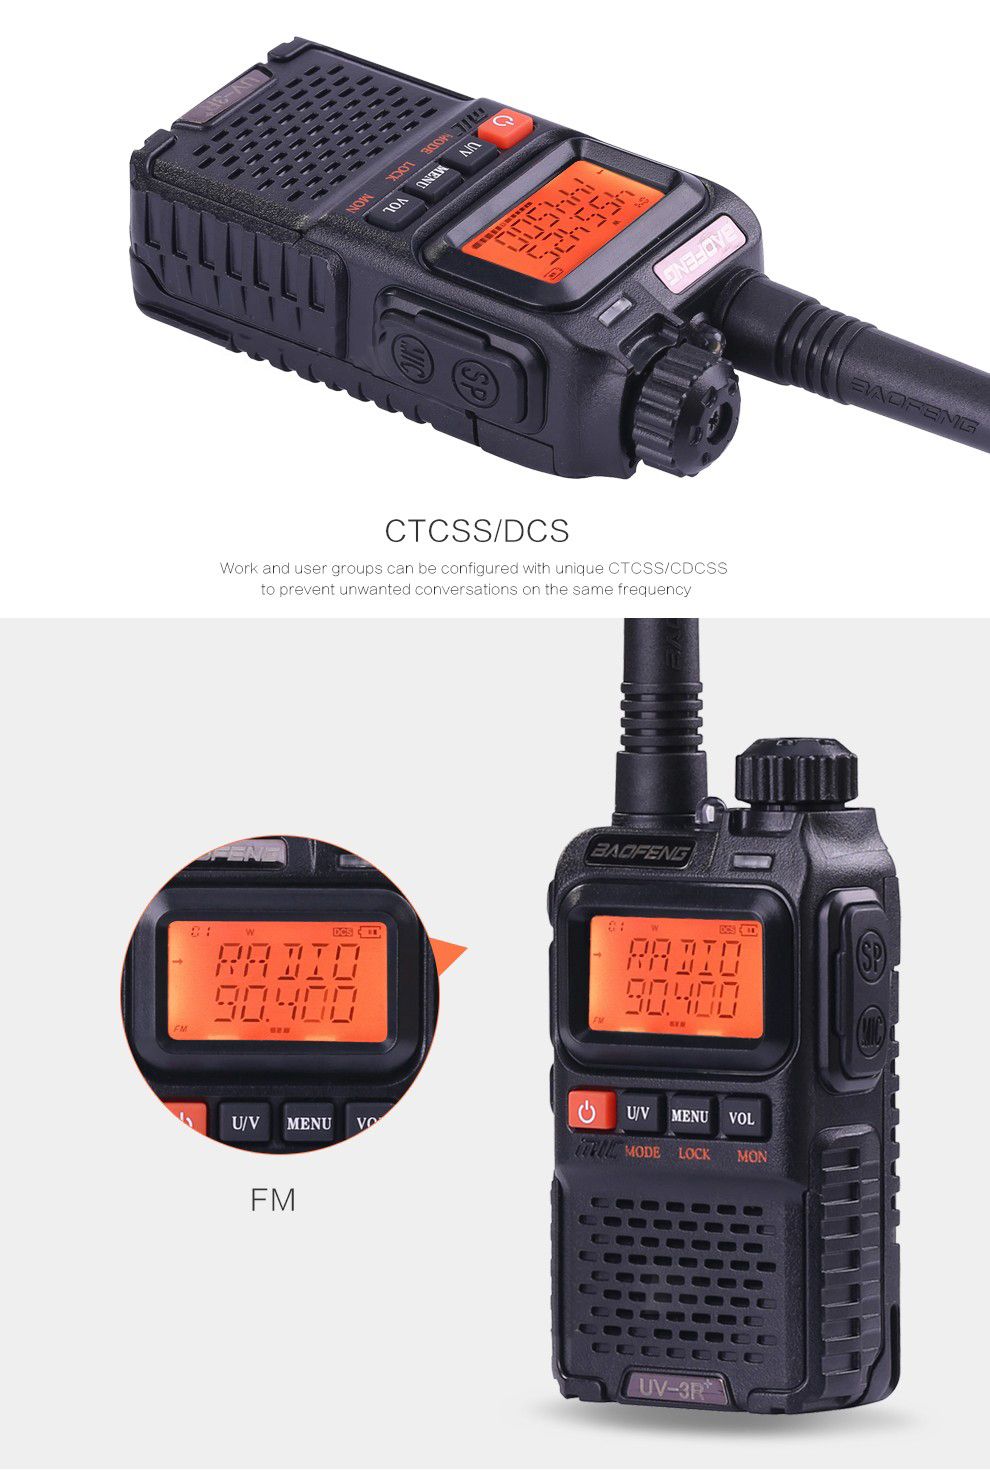 BAOFENG-UV3R-Plus-Mini-Walkie-Talkie-Intercom-UHF-VHF-Dual-Band-Dual-Display-Full-Channels-FM-Radio--1192333